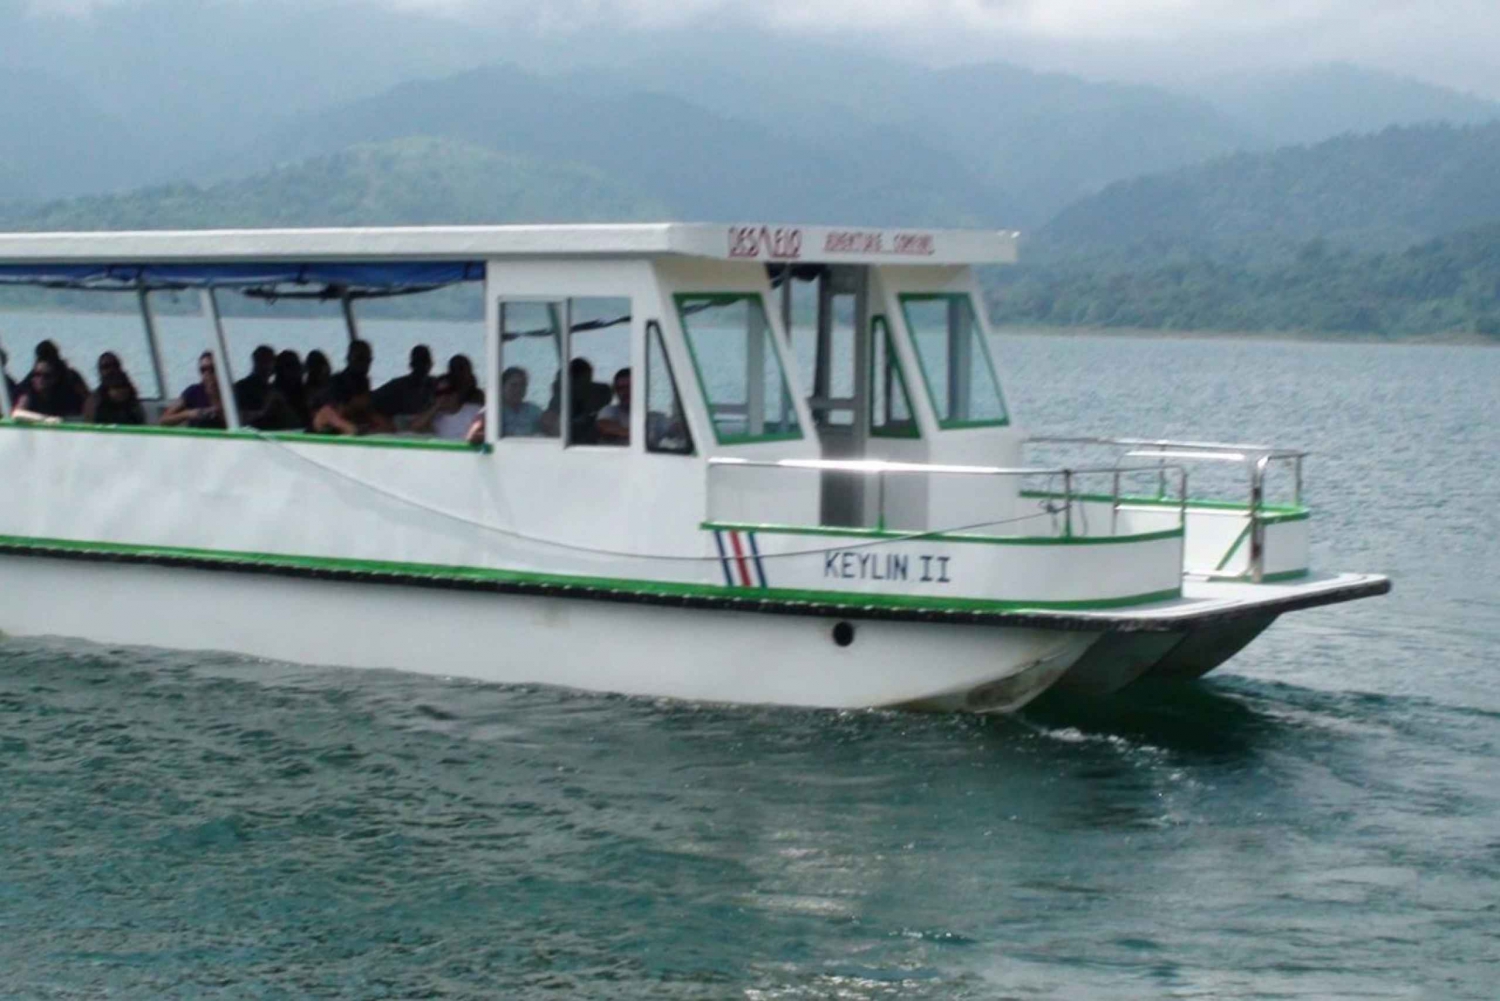 La Fortuna lub Monteverde: transfer łodzią w jedną stronę